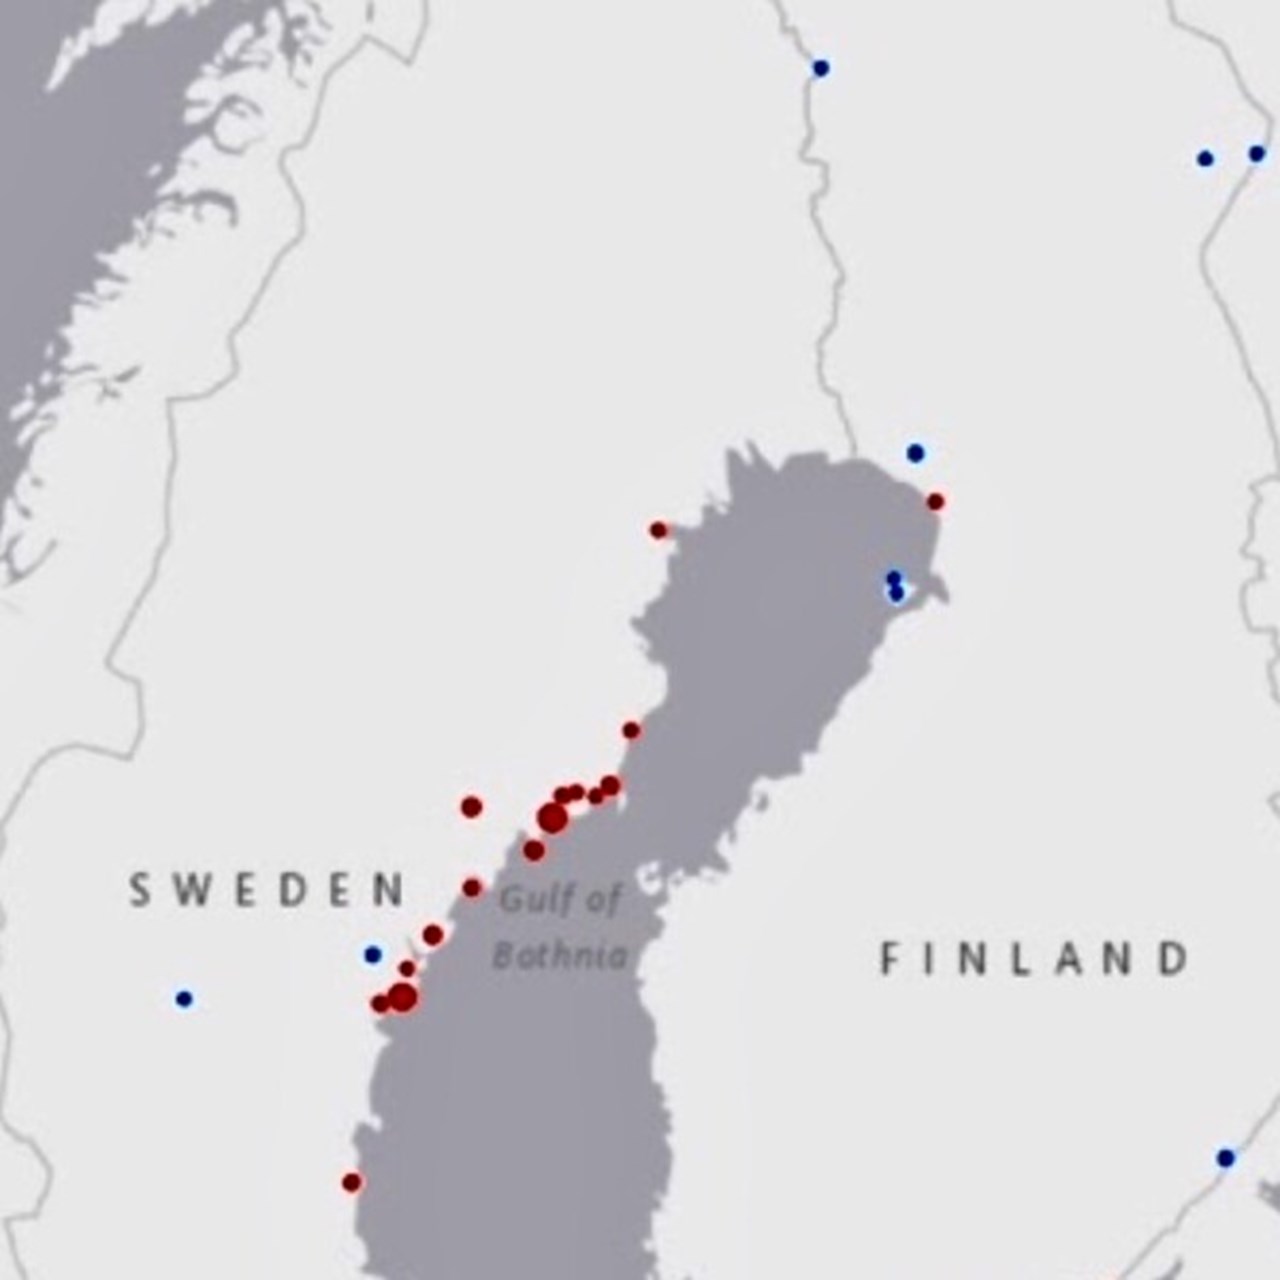 Visar ett uttklipp av en större kartbild i grått och vitt över norra skandinavien med röda och blå prickar på